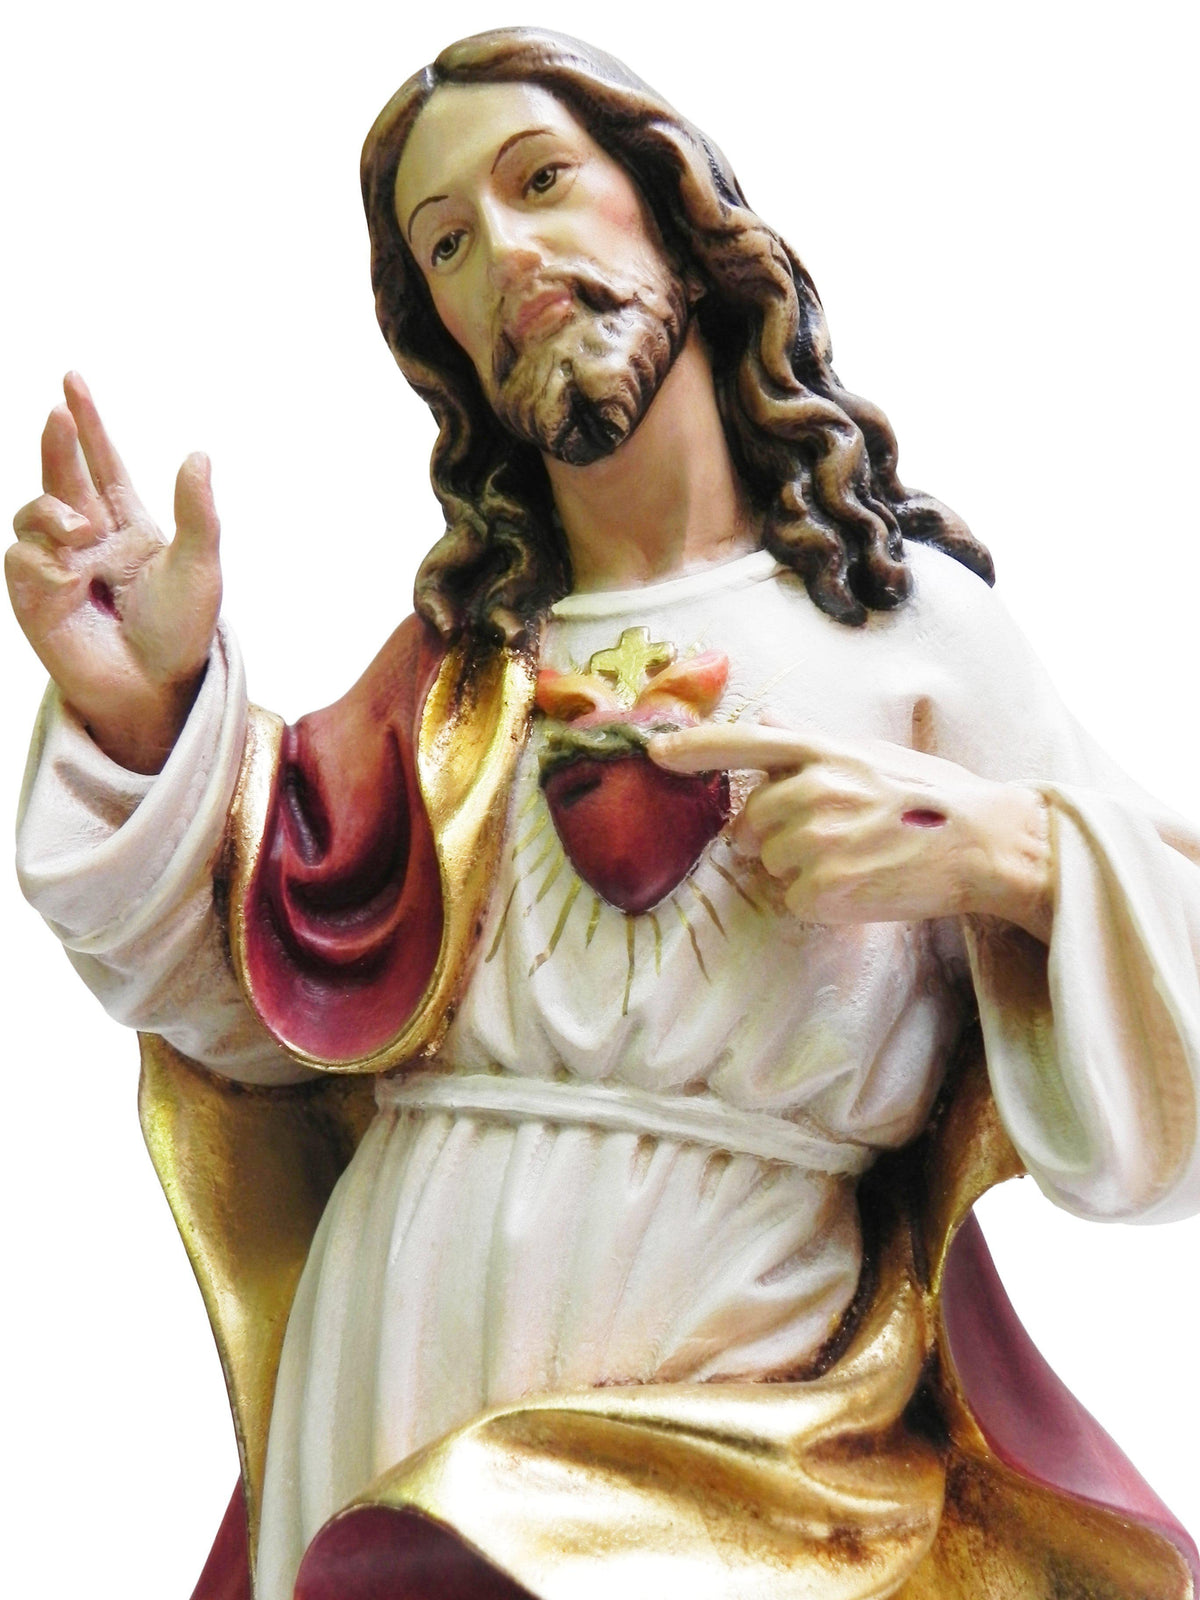 Imagem do Sagrado Coração de Jesus de Madeira Italiana 40 cm